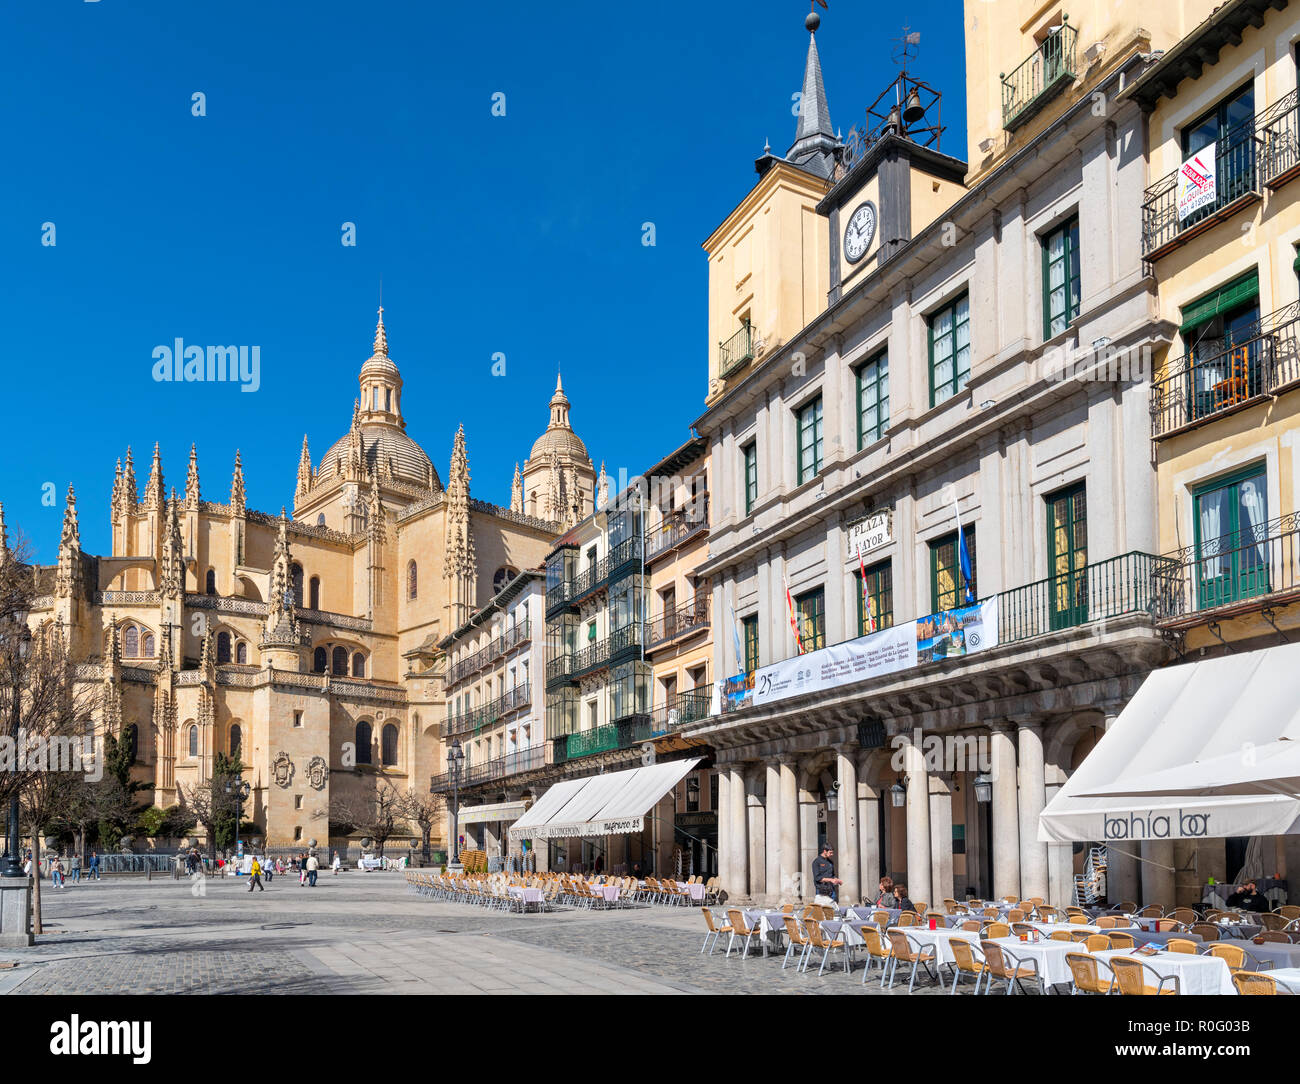 La Plaza Mayor en regardant vers la cathédrale, Segovia, Castilla y Leon, Espagne Banque D'Images